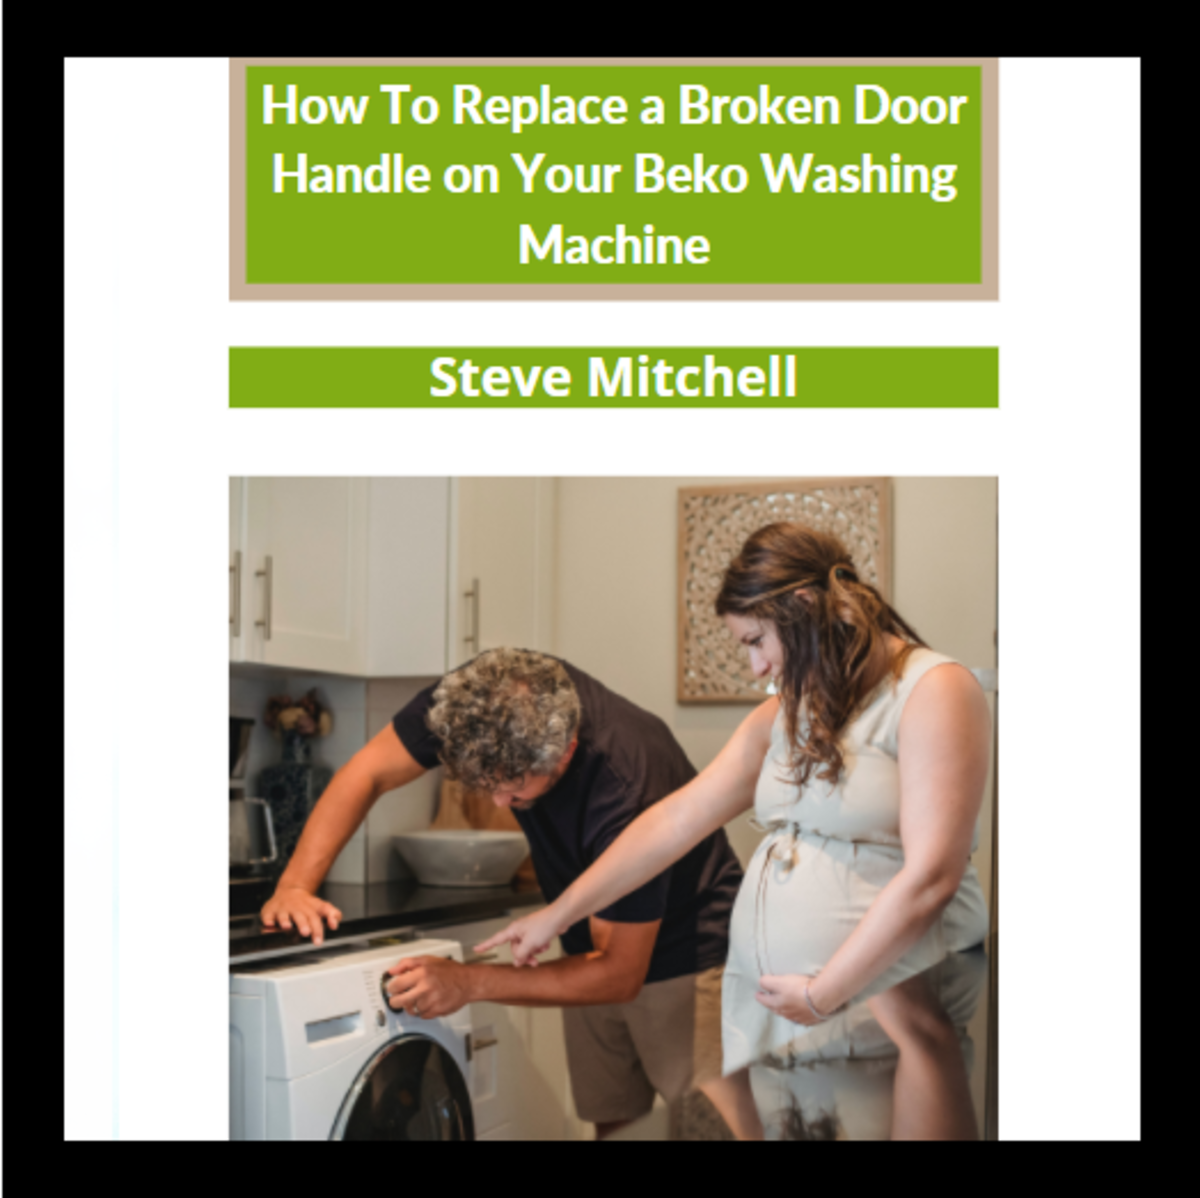 How To Replace a Broken Door Handle on Your Beko Washing Machine